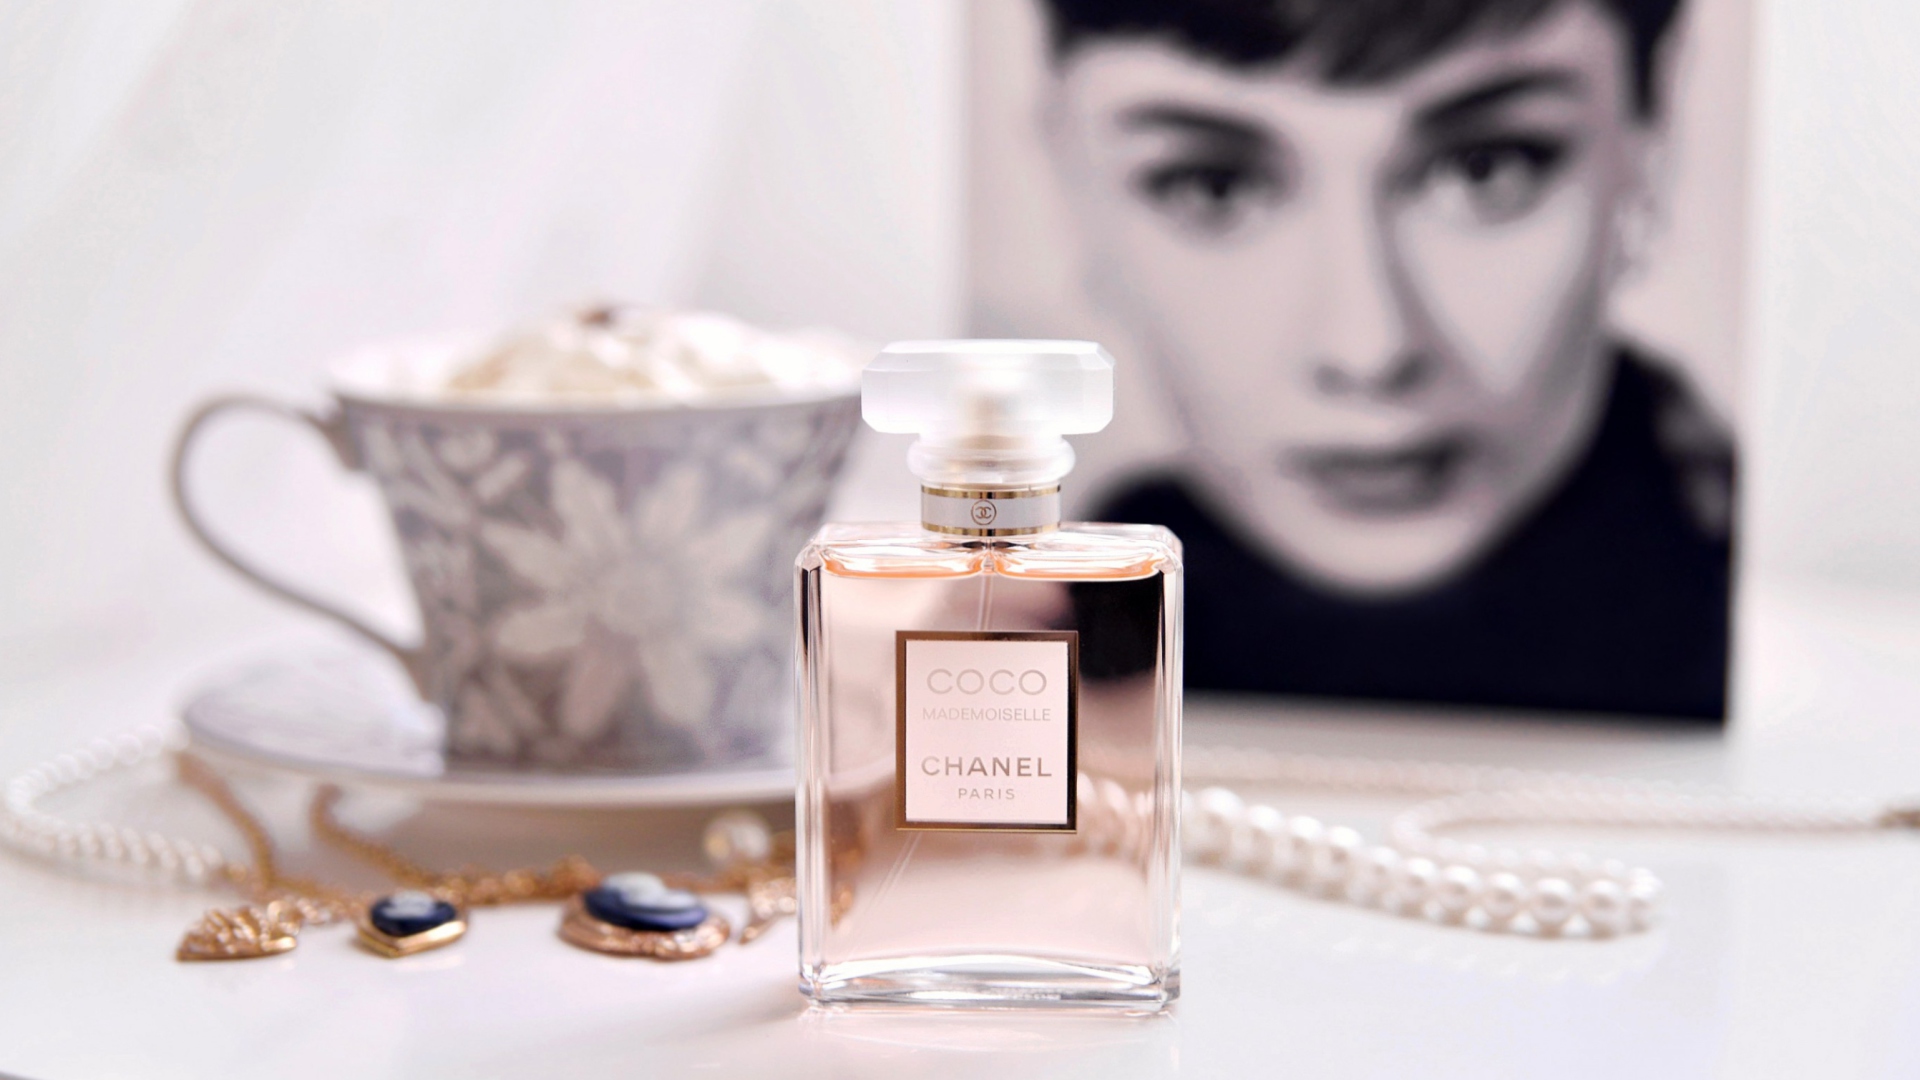 Обои Chanel Coco Mademoiselle Perfume 1920x1080